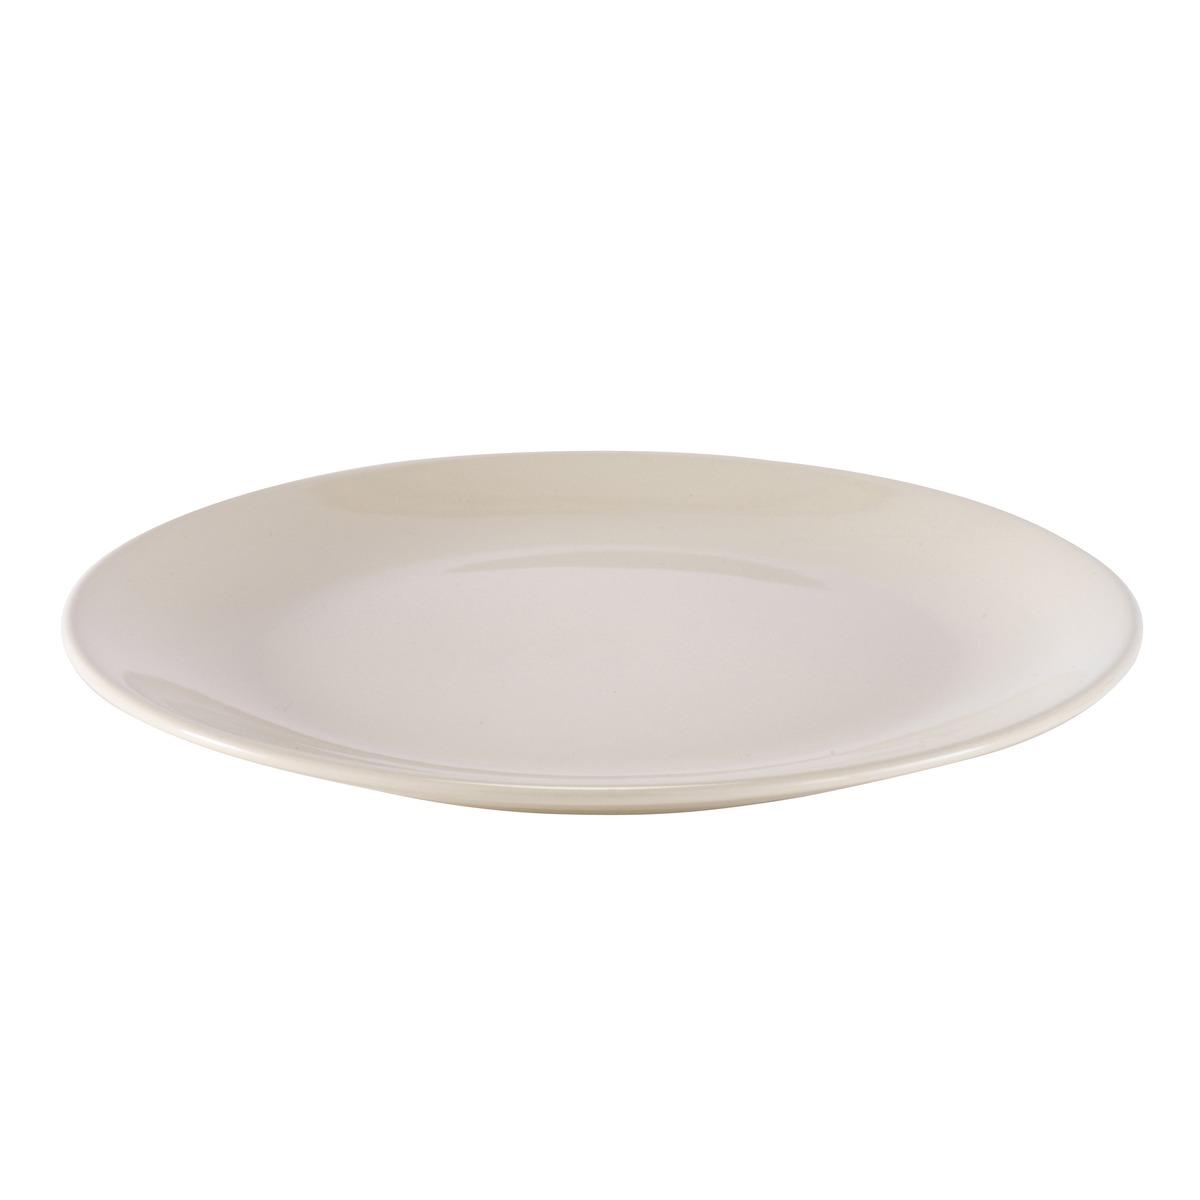 Assiette plate forme calotte en faïence - Diamètre 26 cm - beige crème